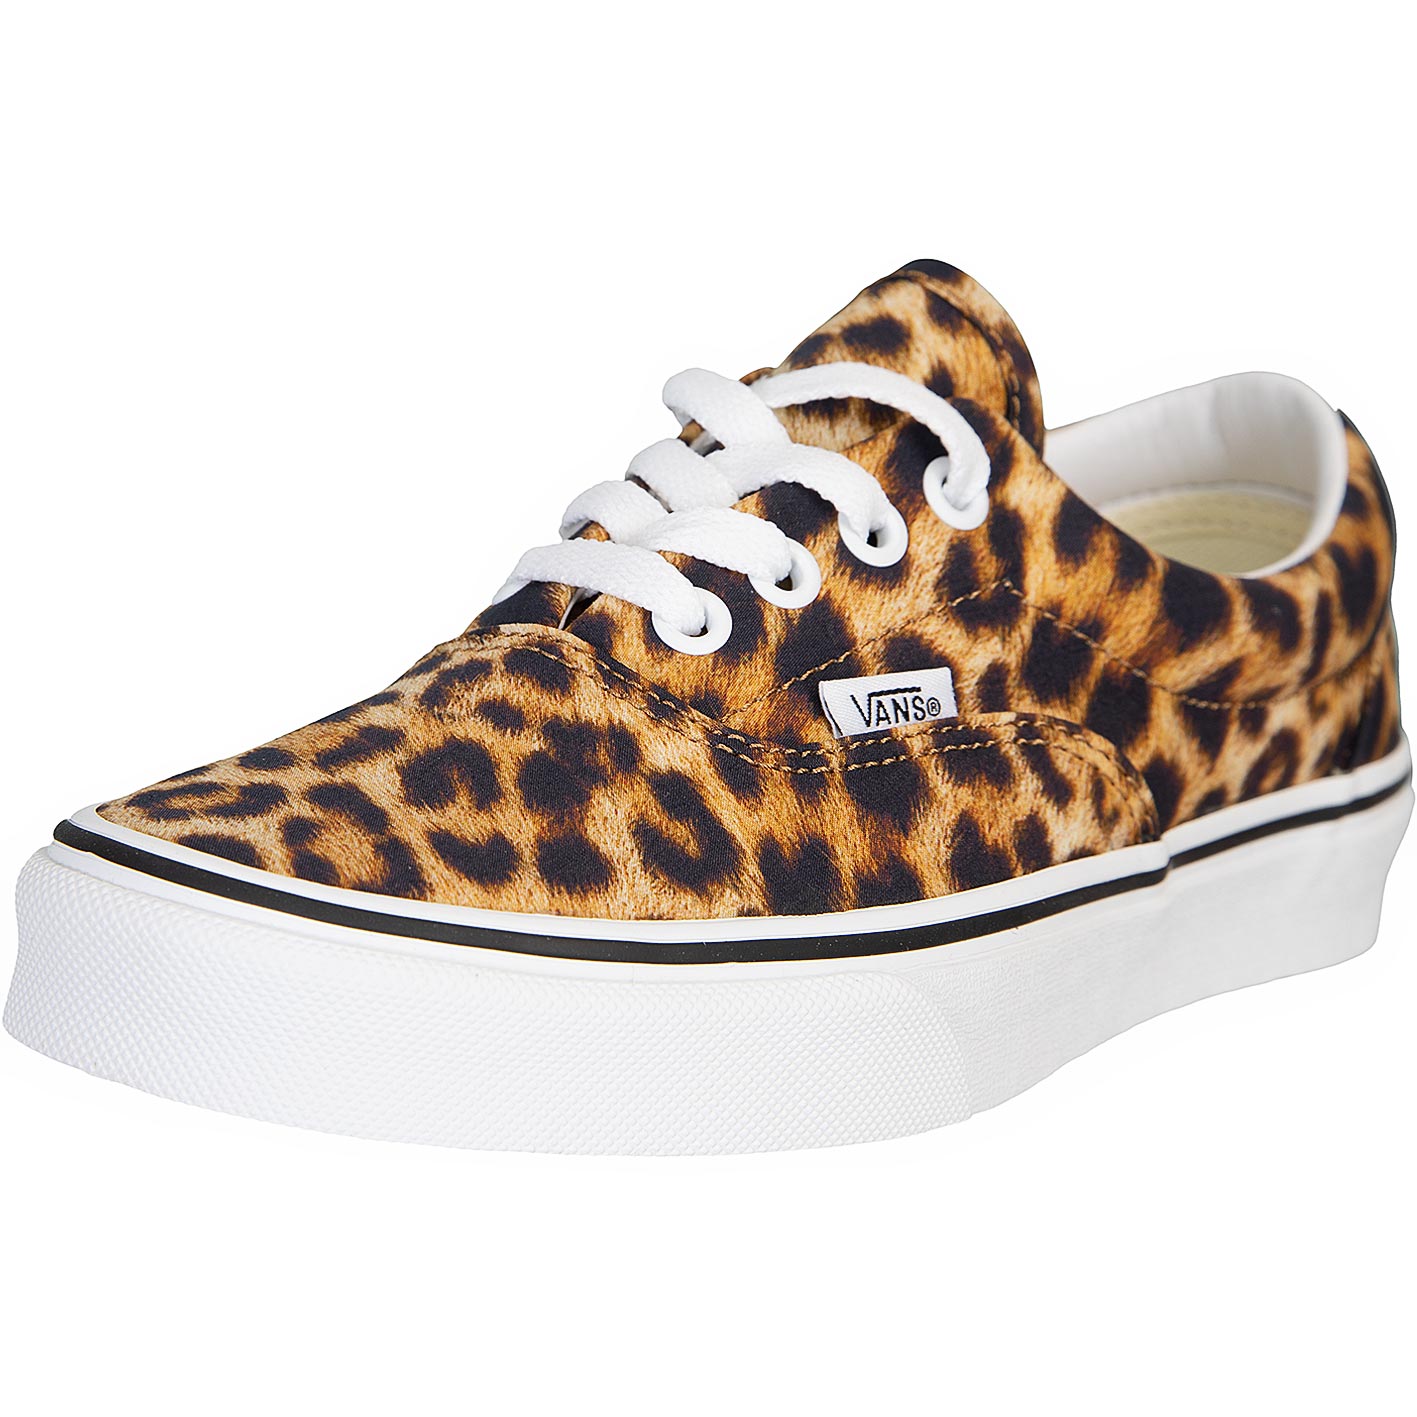 ☆ Vans Damen Sneaker Era Leopard mehrfarbig - hier bestellen!